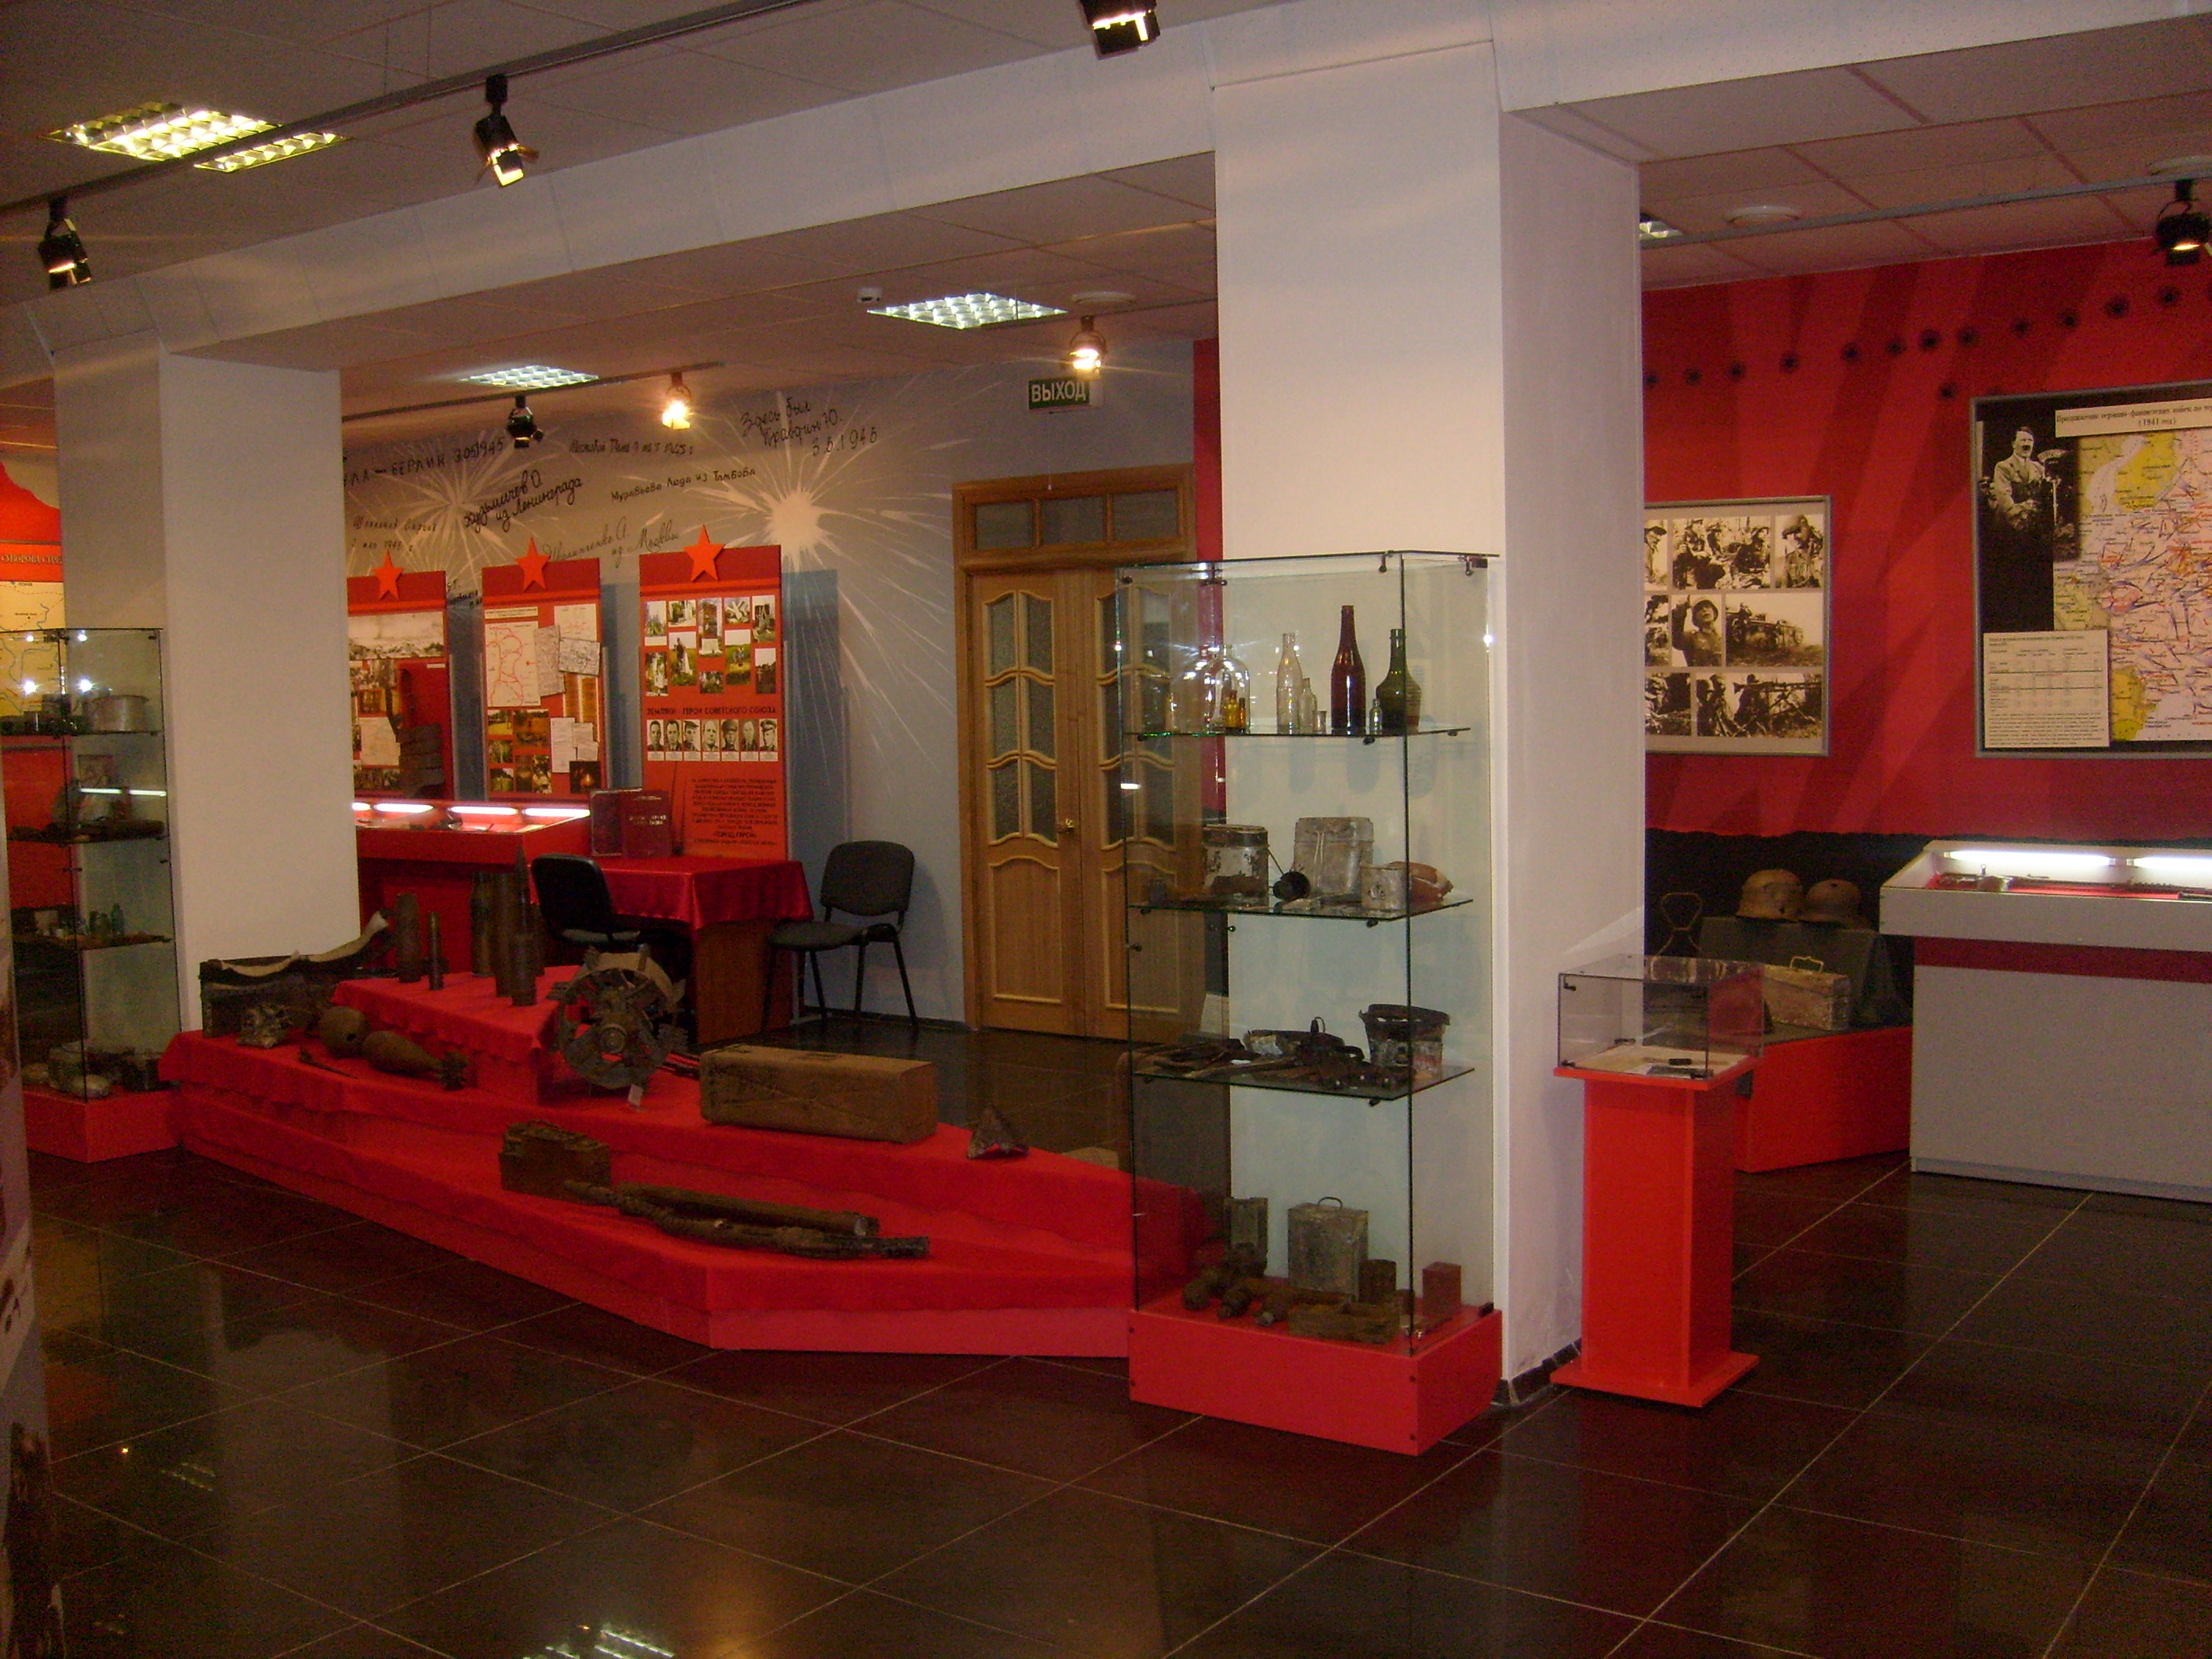 Музей обороны города Тулы в Великой Отечественной войне 1941-1945 гг.